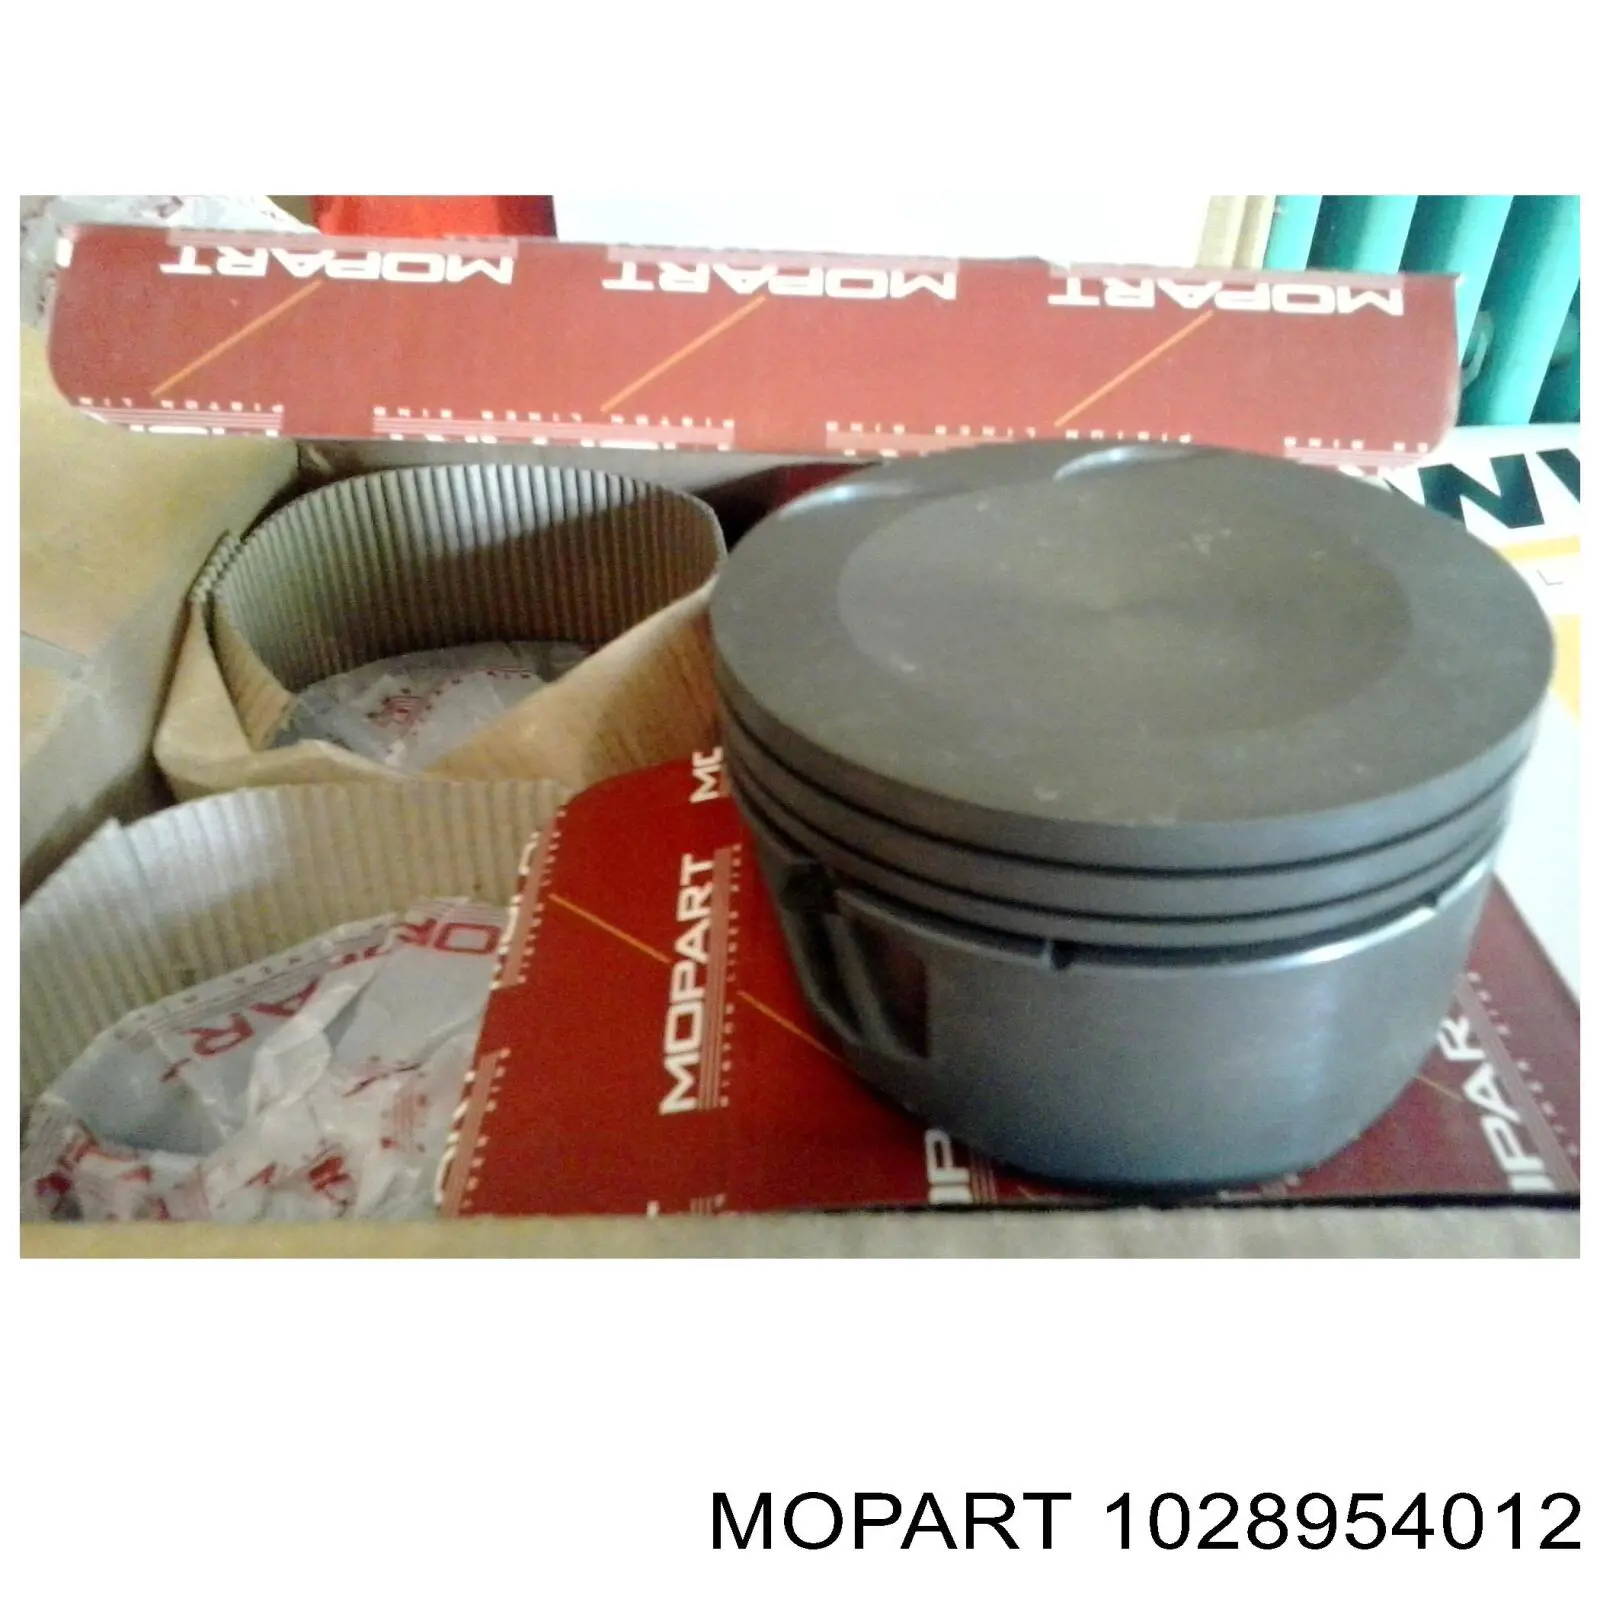 102-89540.12 Mopart поршень в комплекте на 1 цилиндр, 4-й ремонт (+1,00)